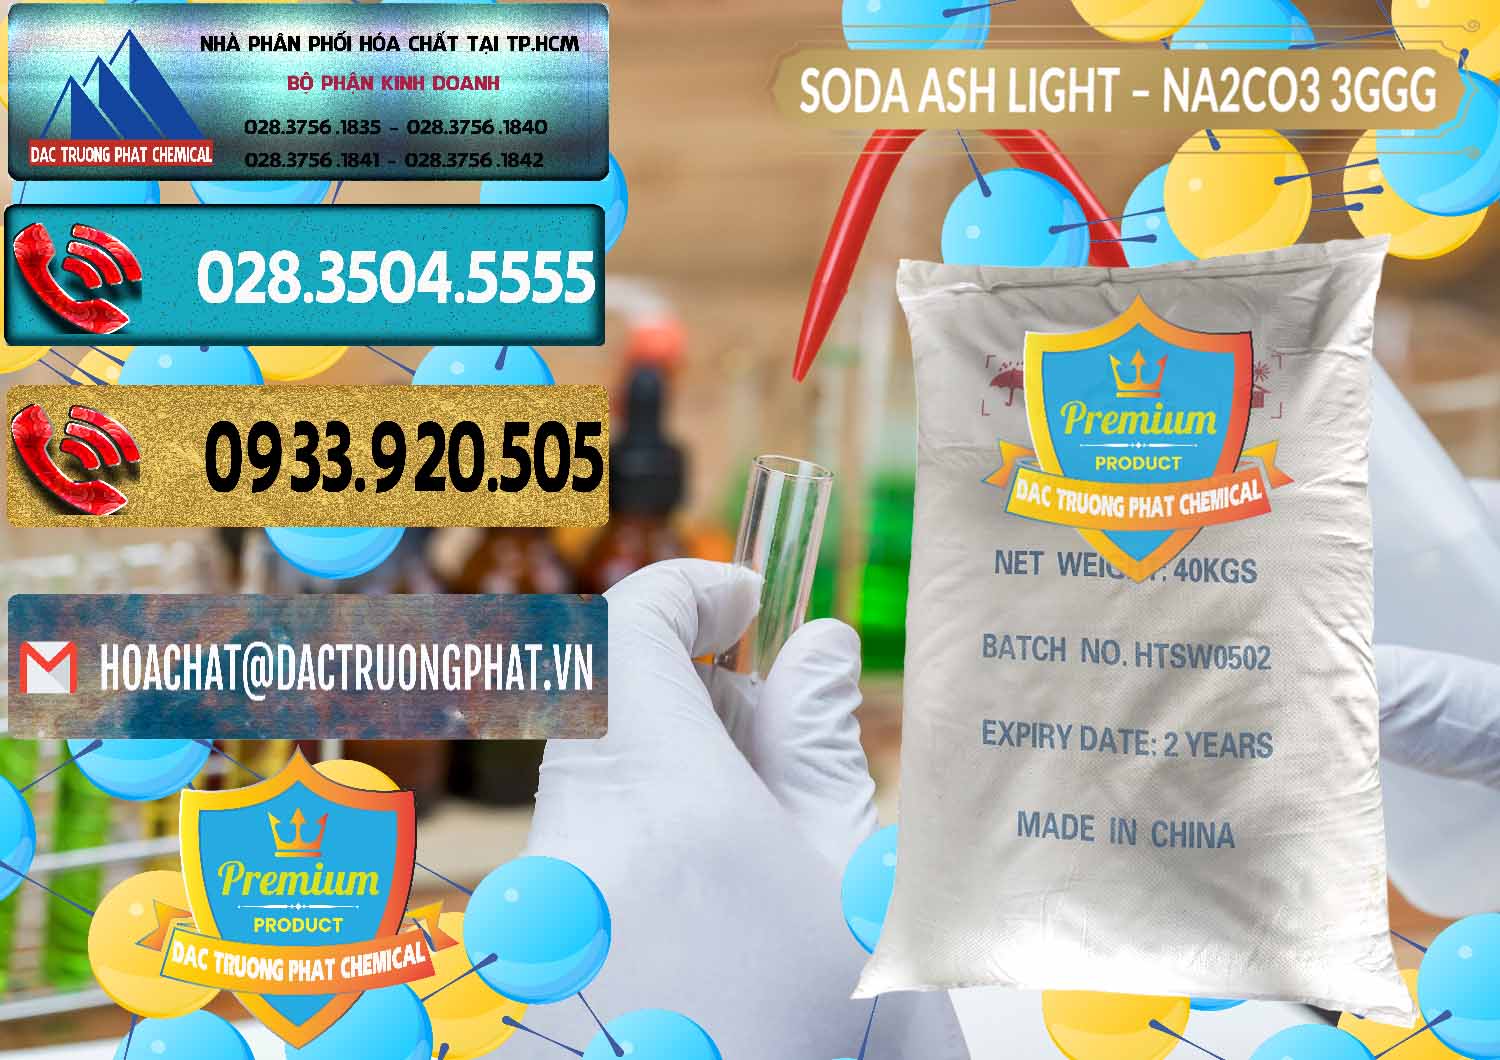 Cty bán ( phân phối ) Soda Ash Light - NA2CO3 3GGG Trung Quốc China - 0124 - Chuyên phân phối và cung ứng hóa chất tại TP.HCM - hoachatdetnhuom.com